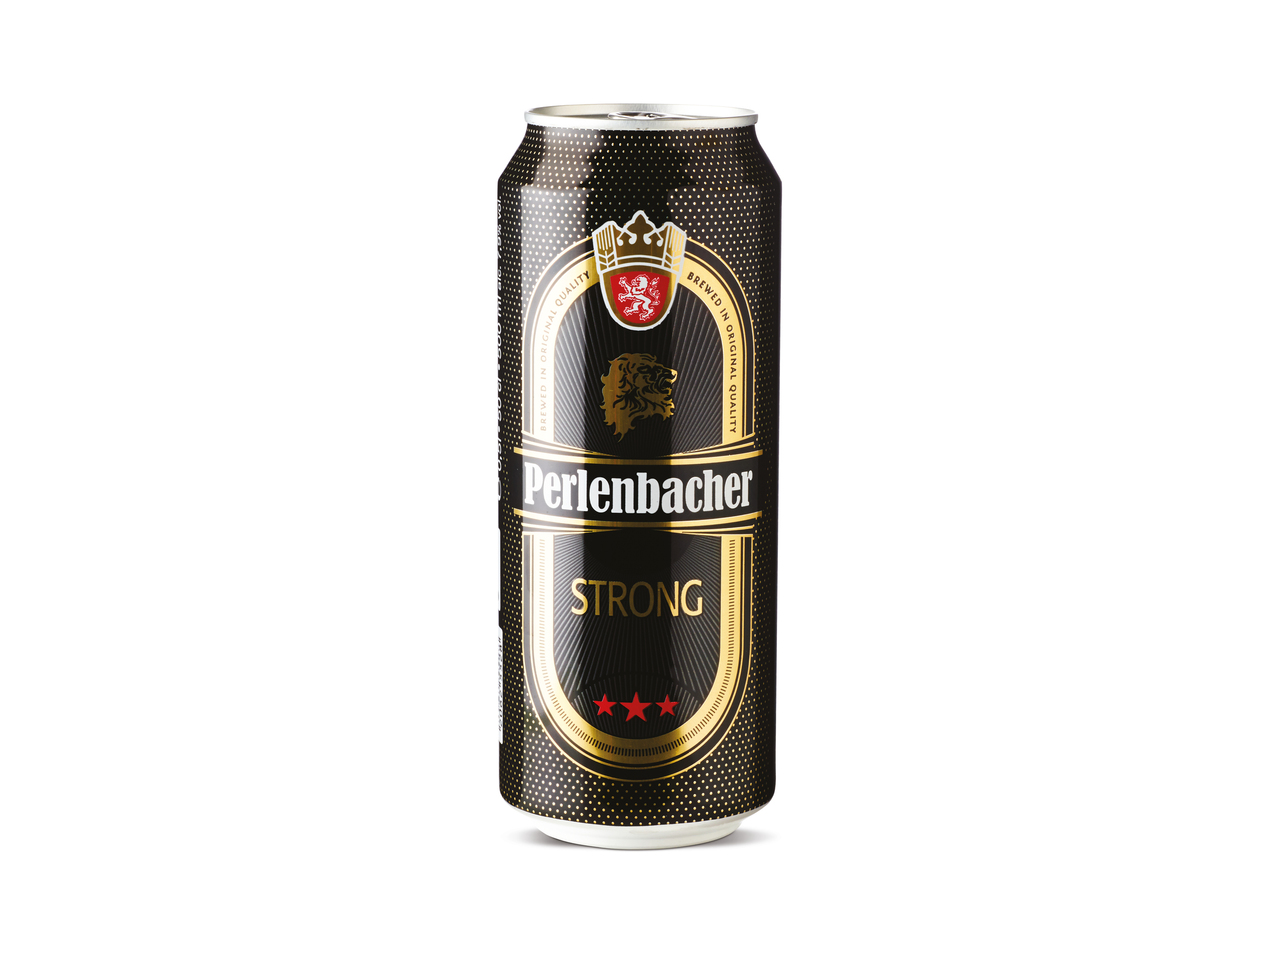 PERLENBACHER Strong beer1 - Lidl — Danmark - Specials archive